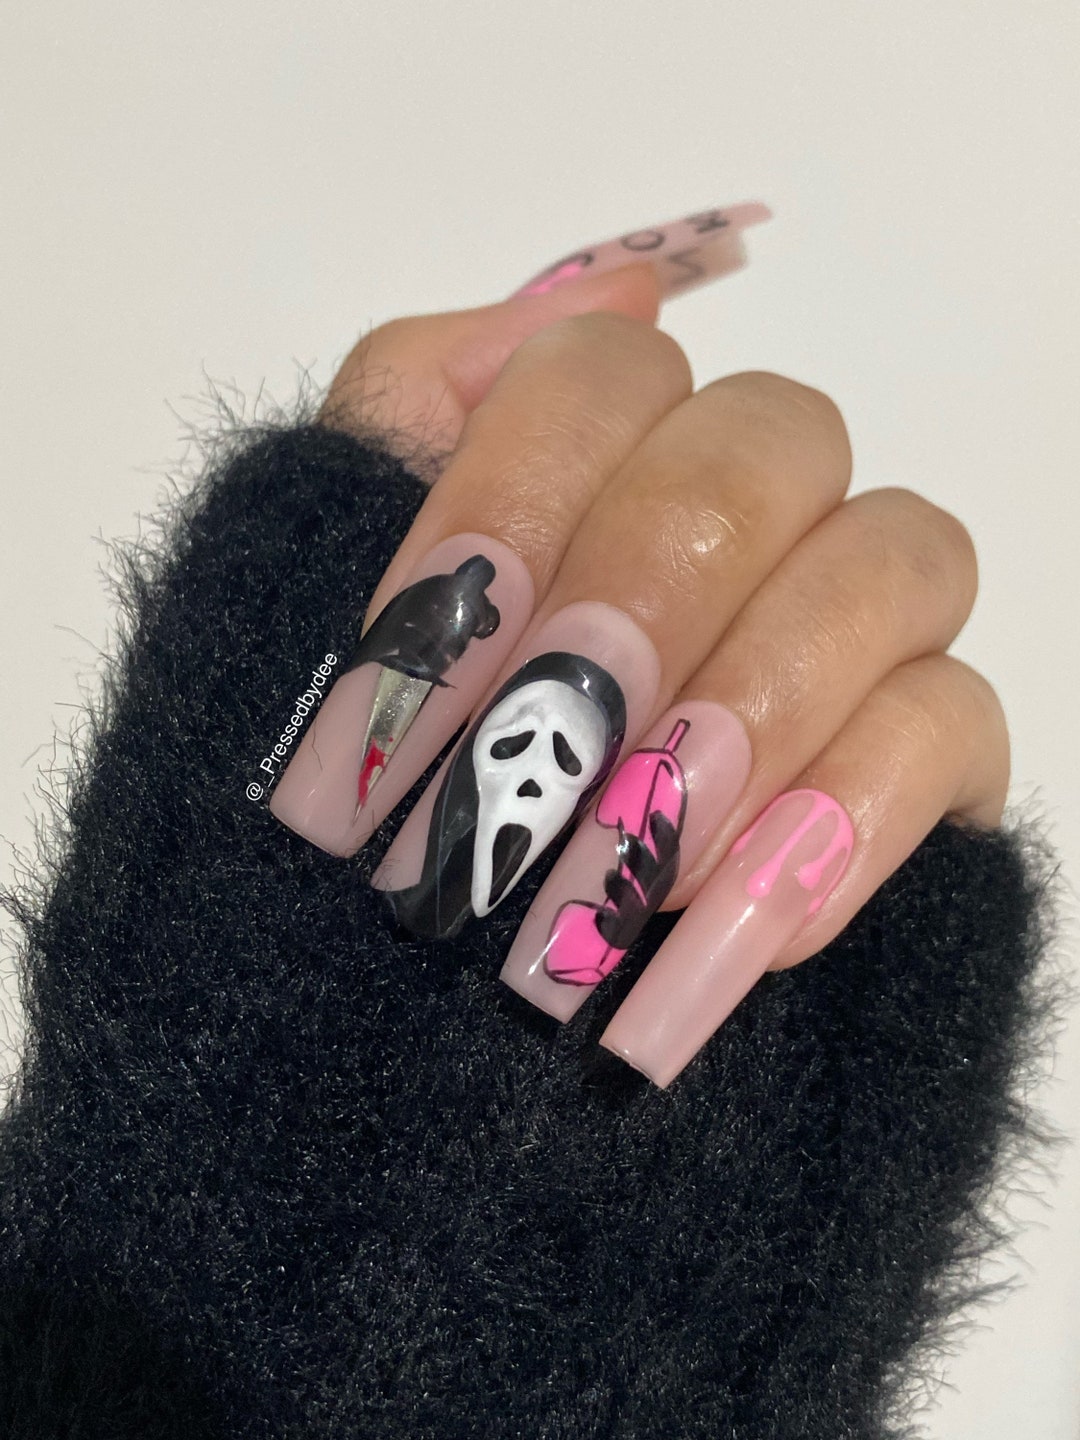 Nail art palette - pink star – I Scream Nails USA